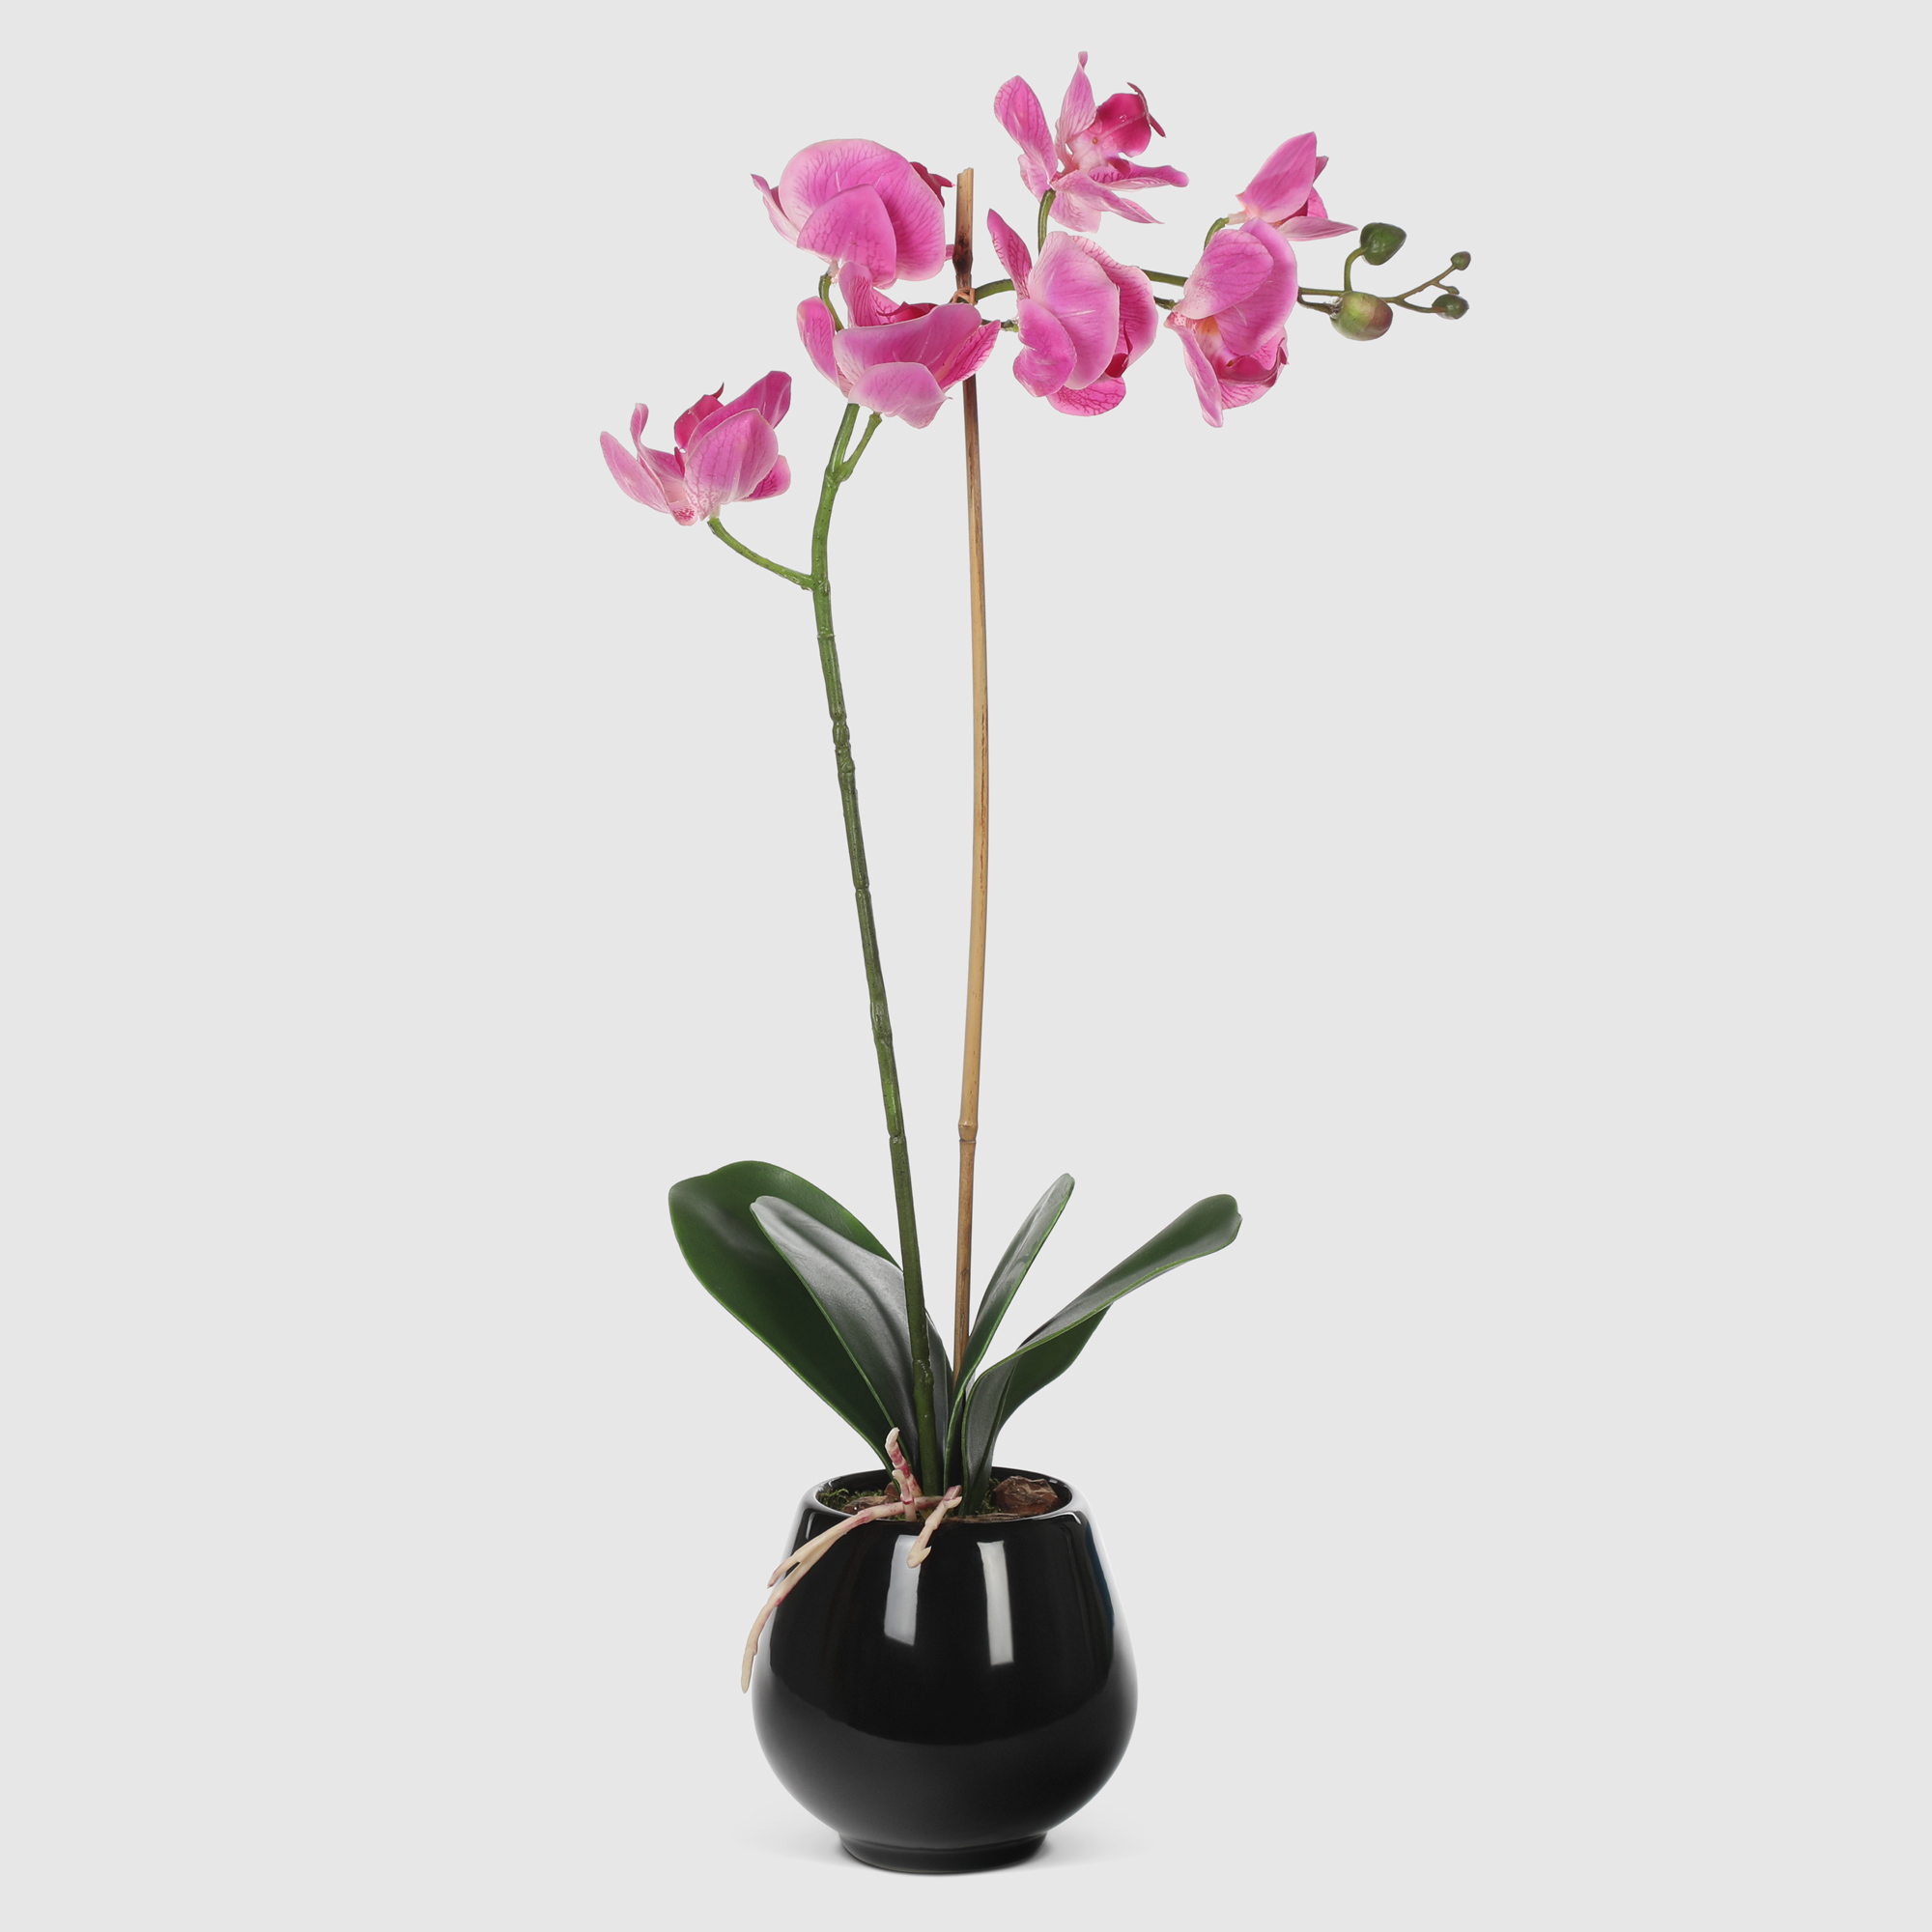 Орхидея в черном кашпо Конэко-О 566_10164185 50 см орхидея фаленопсис конэко о в кашпо 70 см